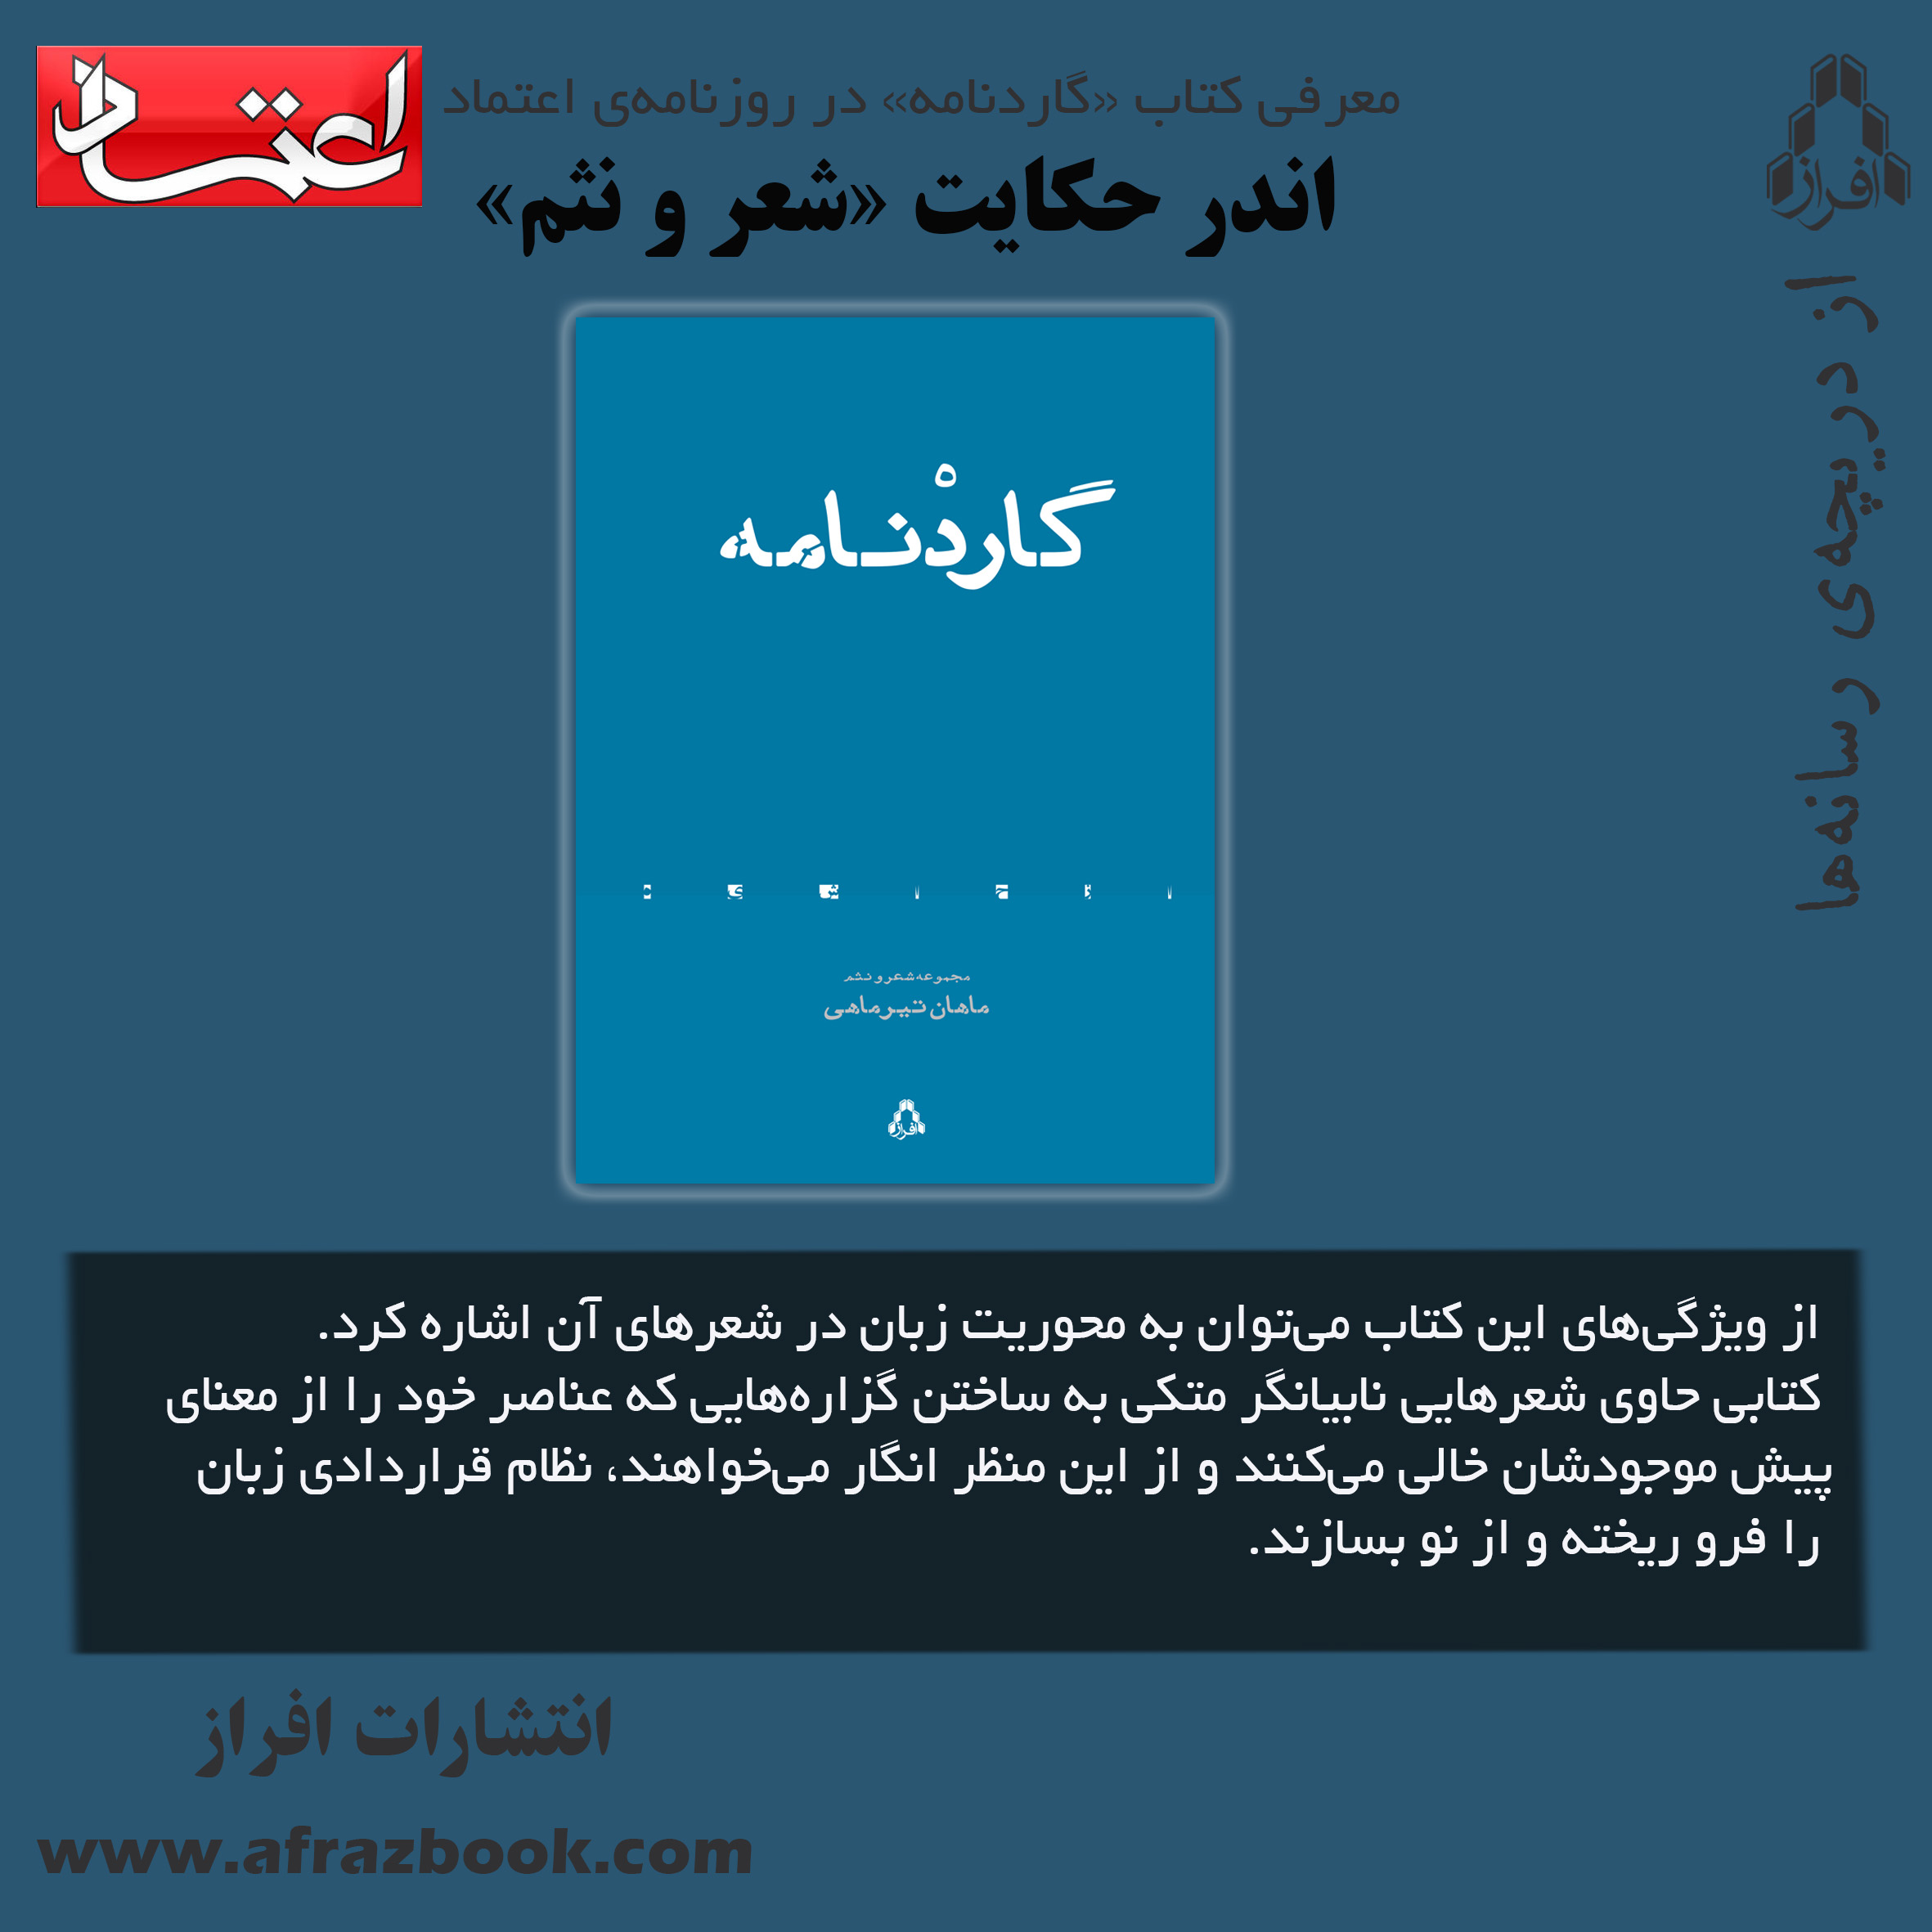 معرفی کتاب «گاردنامه» در روزنامه اعتماد؛ اندر حكايت «شعر و نثم»